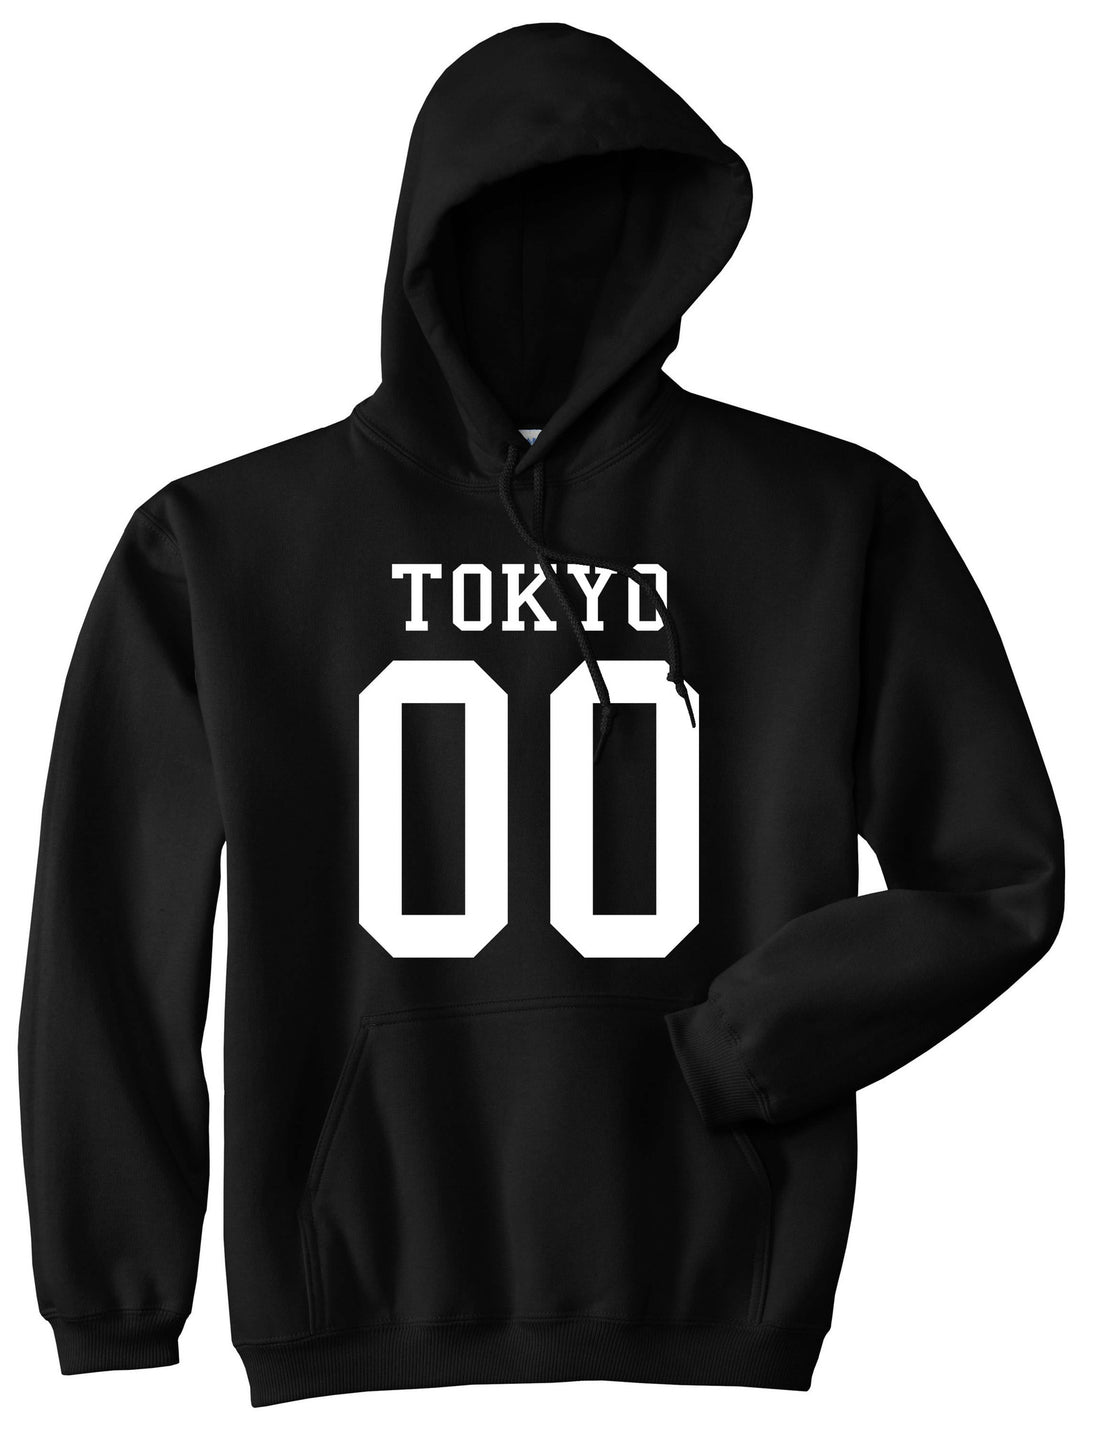 Tokyo Team 00 Jersey Japan Boys Kids Pullover Hoodie Hoody in Black By Kings Of NY